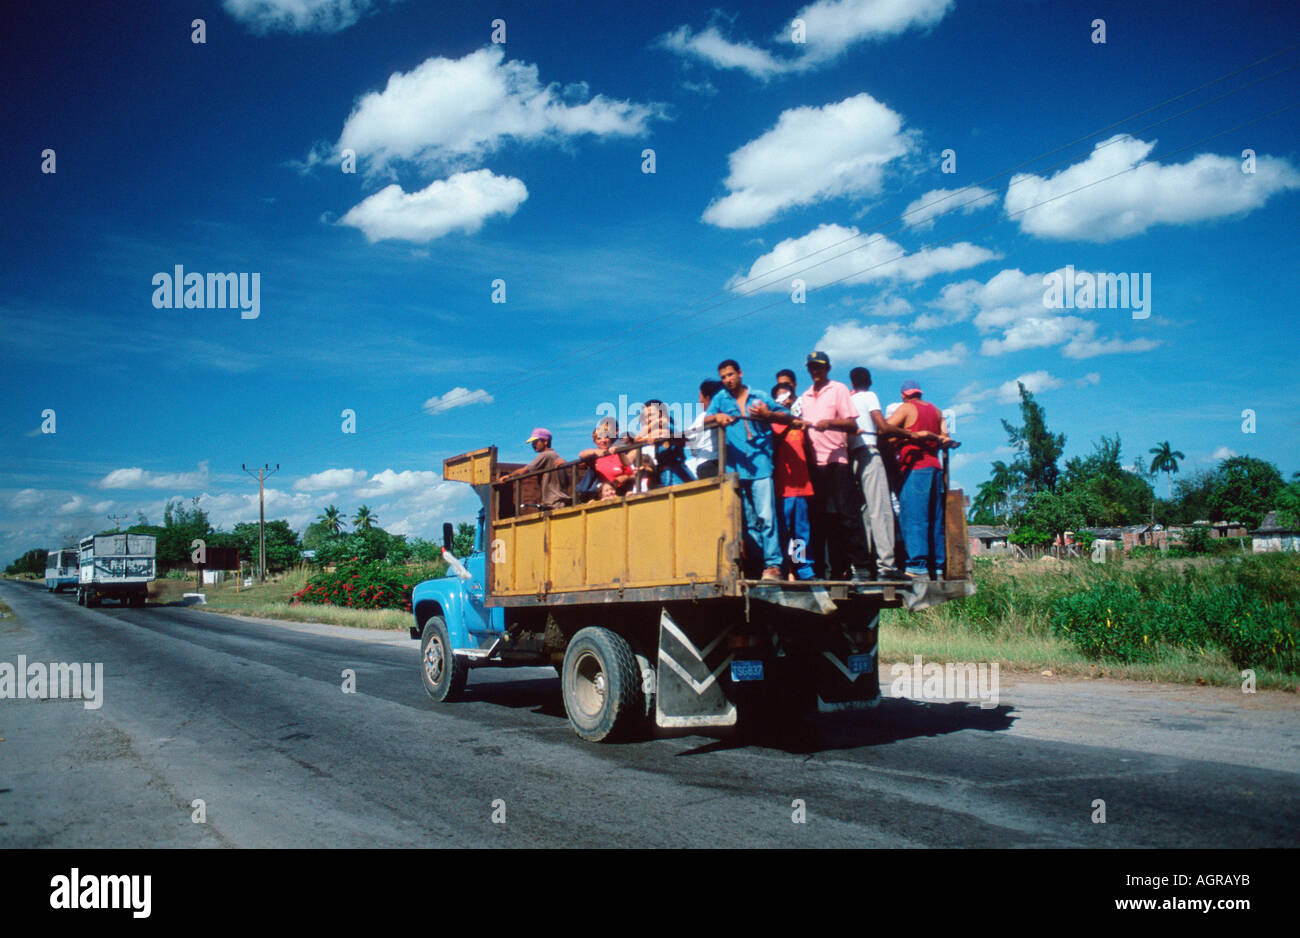 La gente en el camión / Cuba / Menschen auf LKW Foto de stock